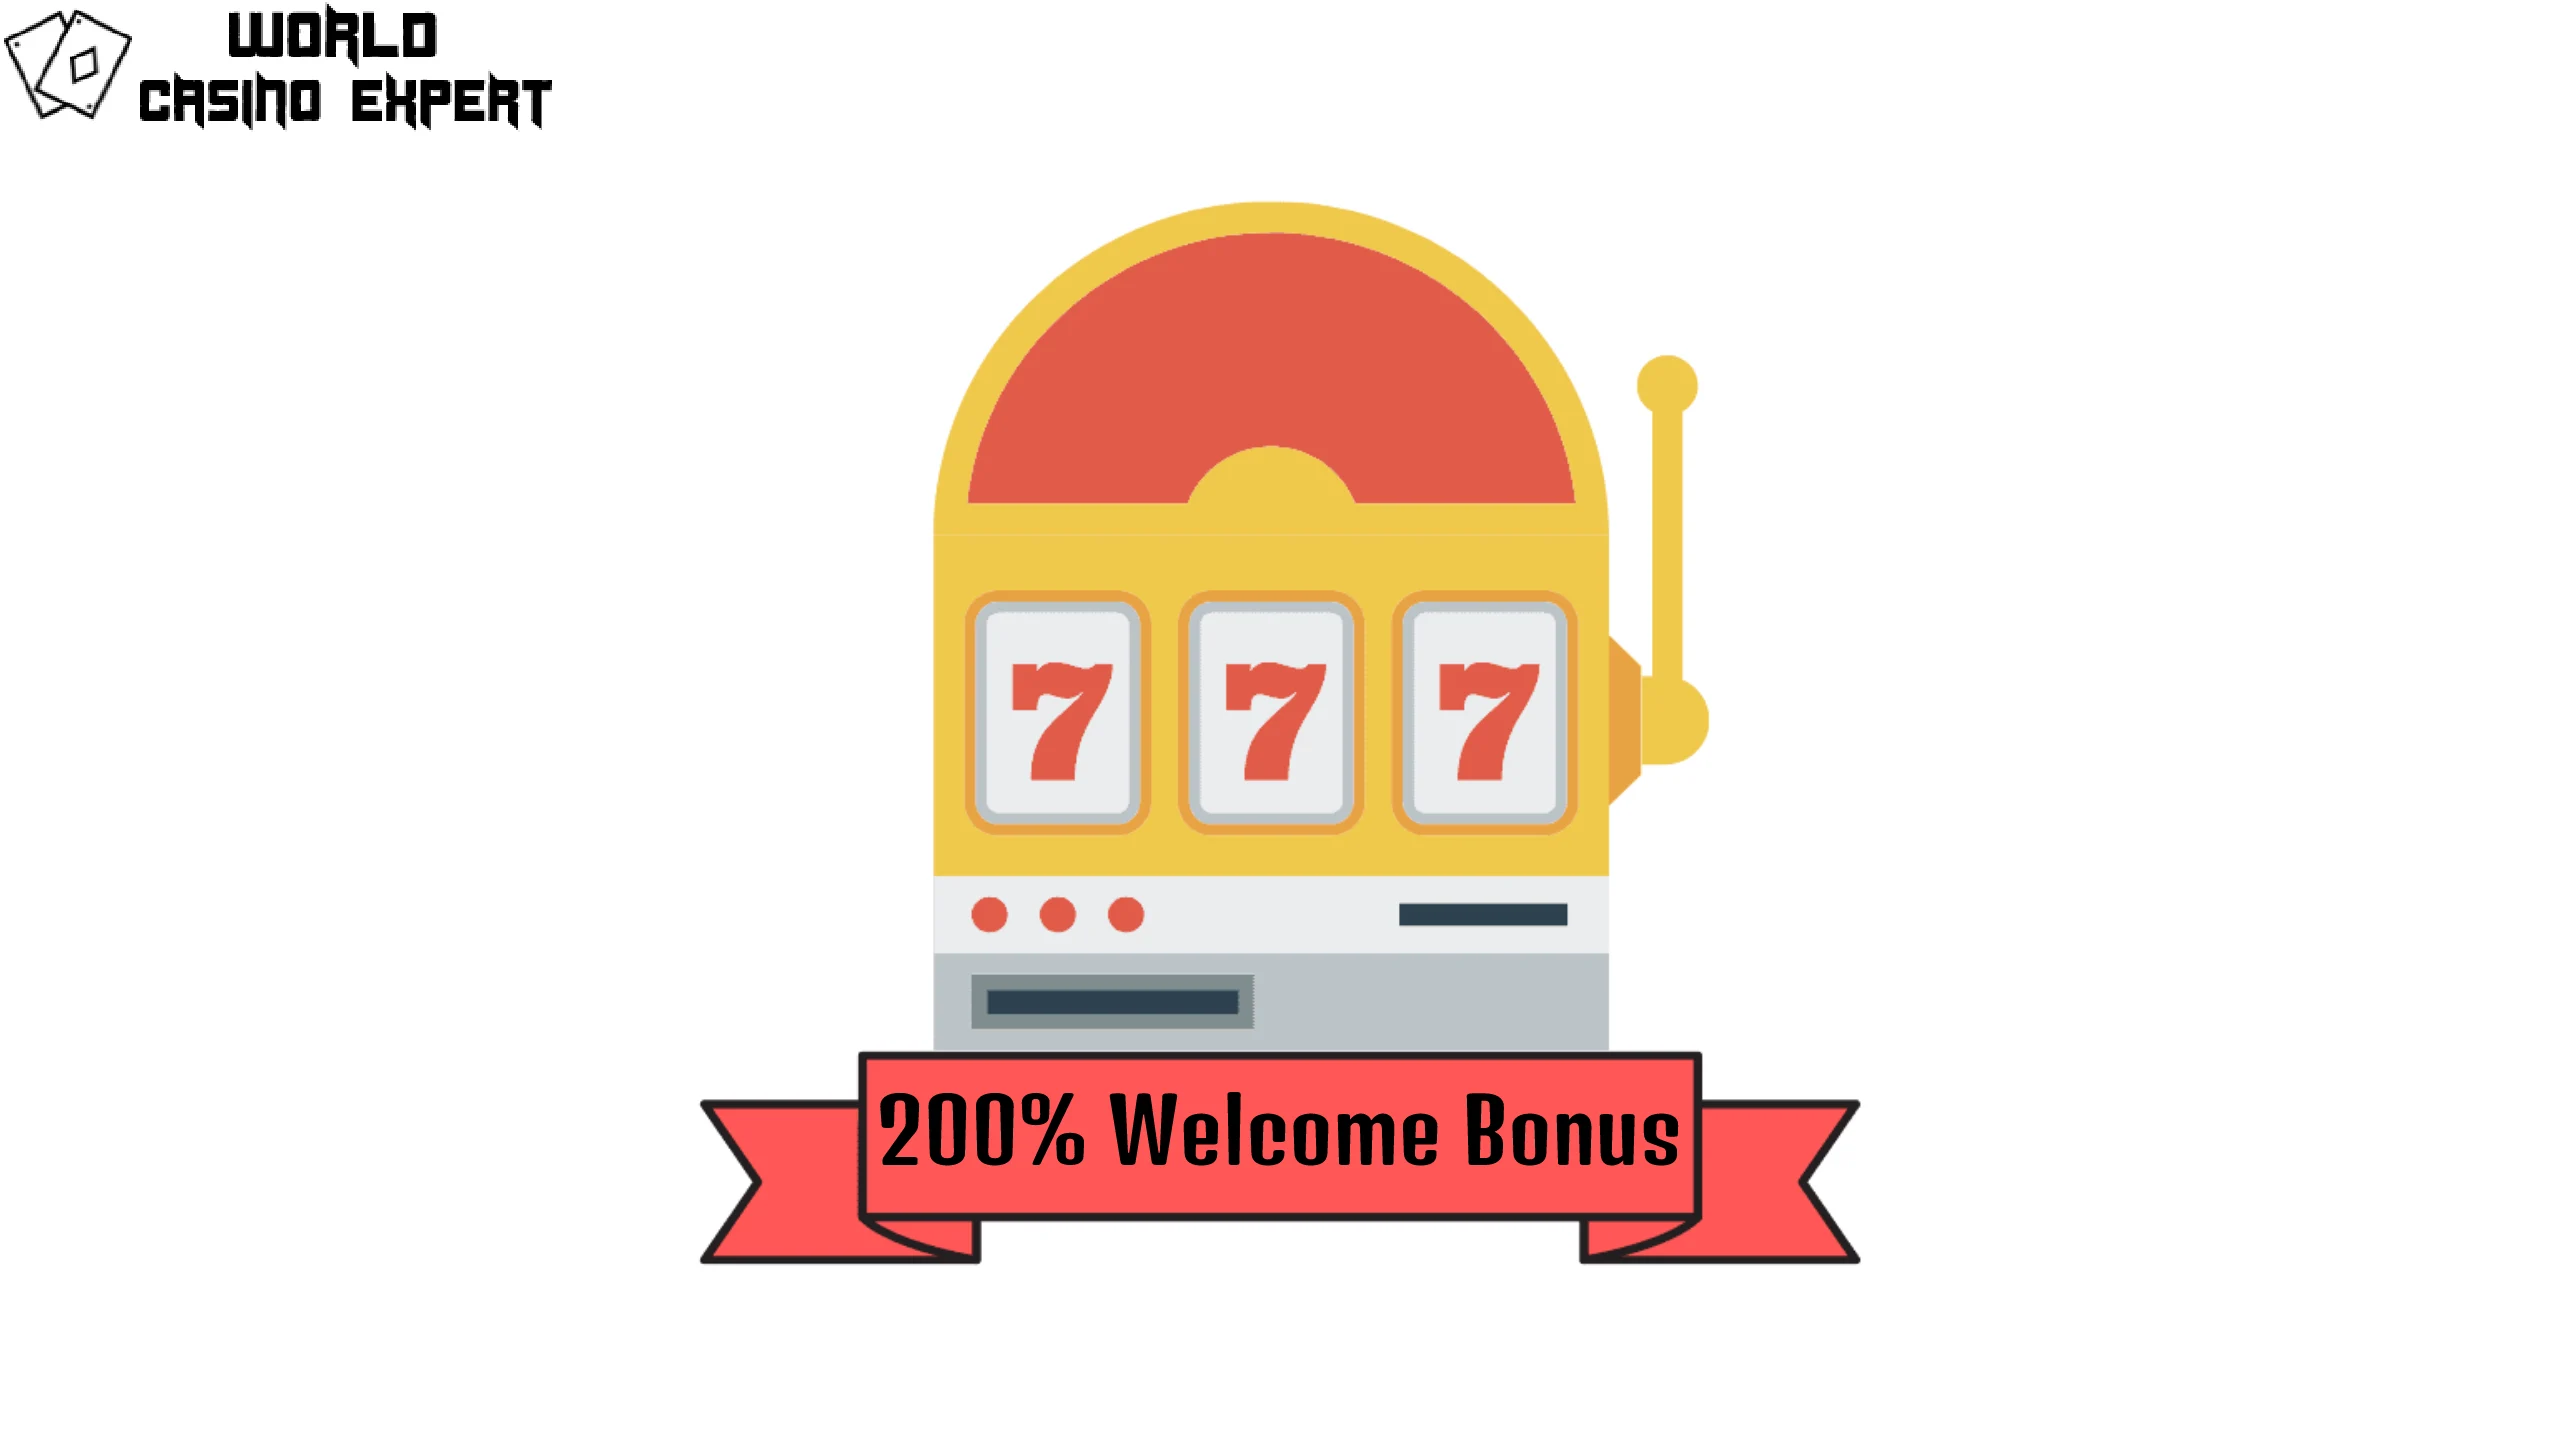 200% Welcome Bonus | World Casino Expert